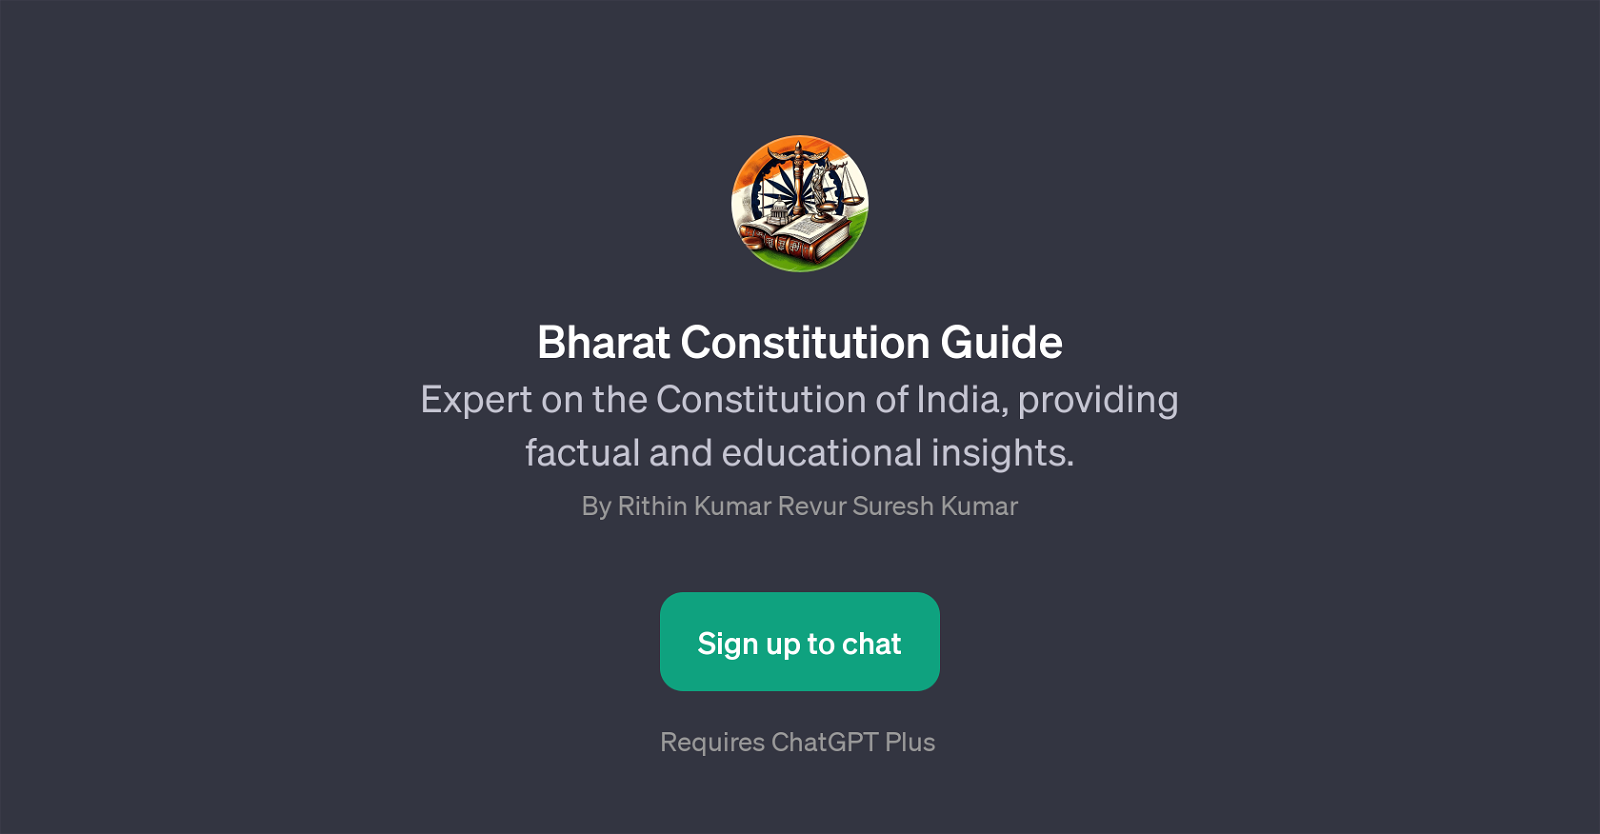 Bharat Constitution Guide website